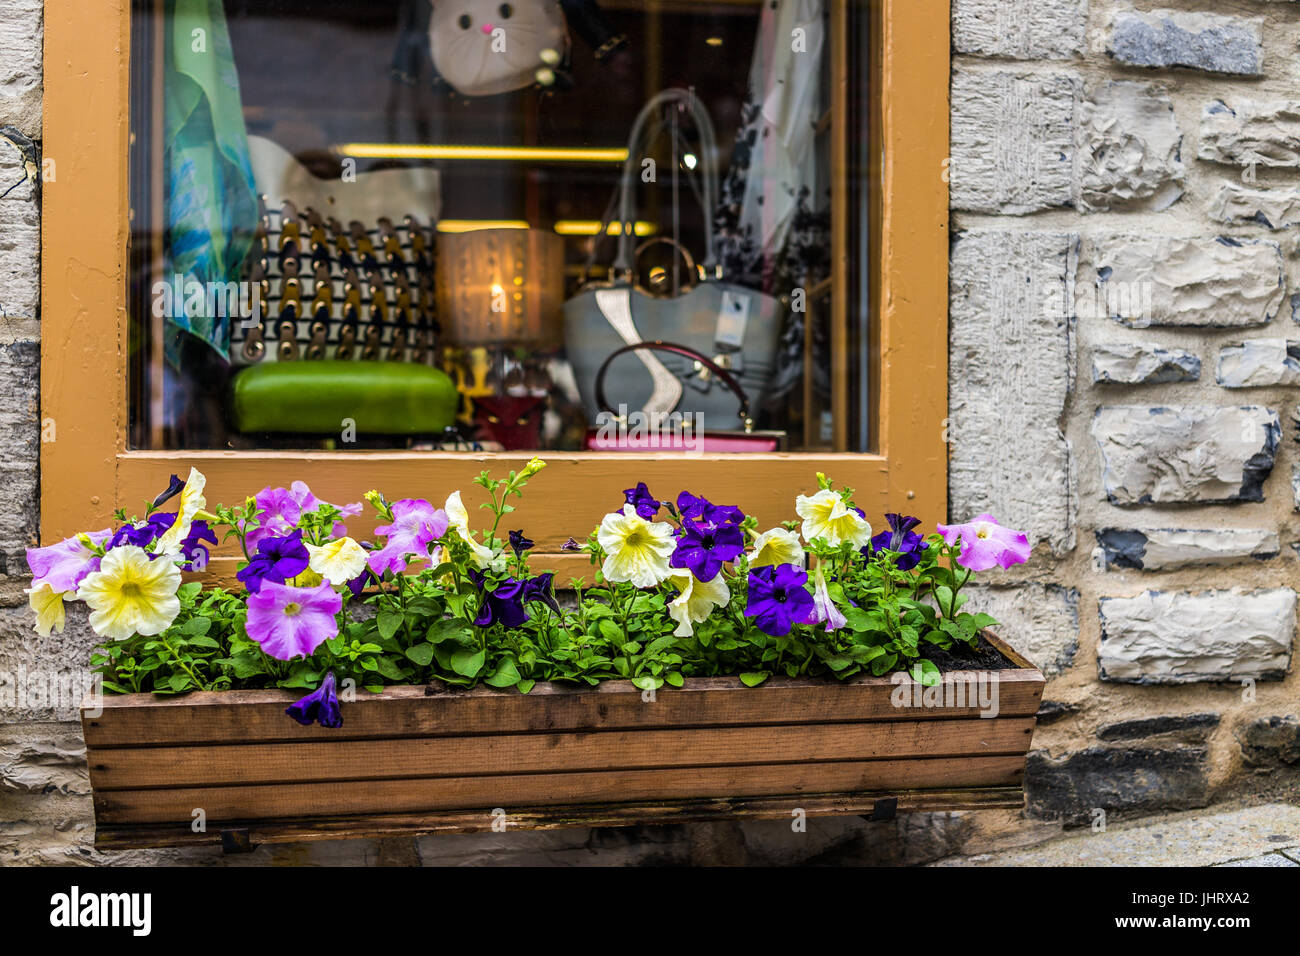 La Ciudad de Quebec, Canadá - 30 de mayo de 2017: colgantes petunia cama de flor de decoración en la parte inferior de la ciudad vieja calle por la tienda de recuerdos de piedra ventana durante summe Foto de stock